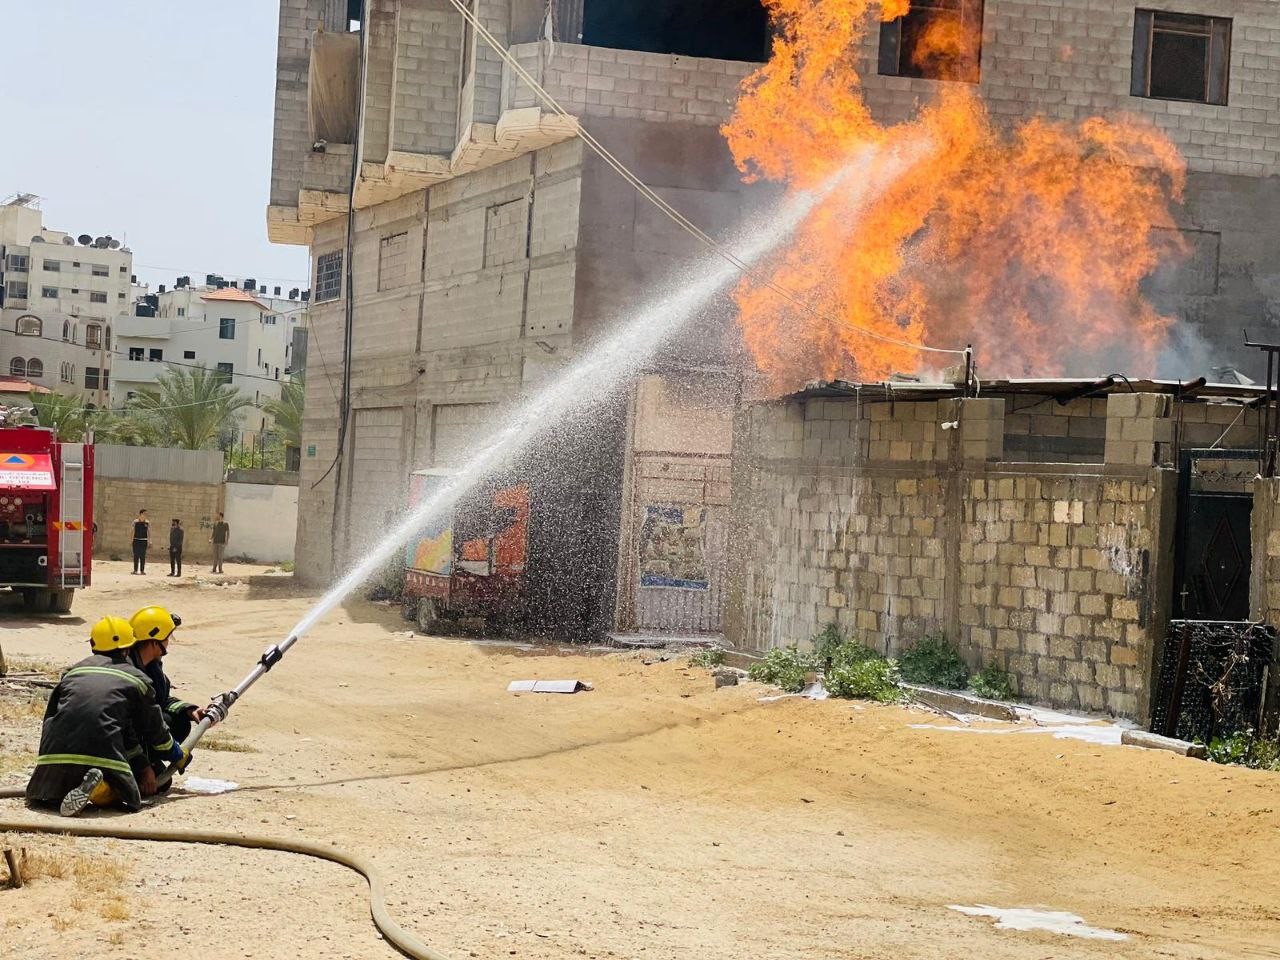 طقم الإطفاء بمديرية الدفاع المدني تتمكن من السيطرة على حريق نشب في نقطة عشوائية لتعبئة الغاز بين المنازل السكنية قرب شارع الصناعة بمدينة غزة  66.jpg